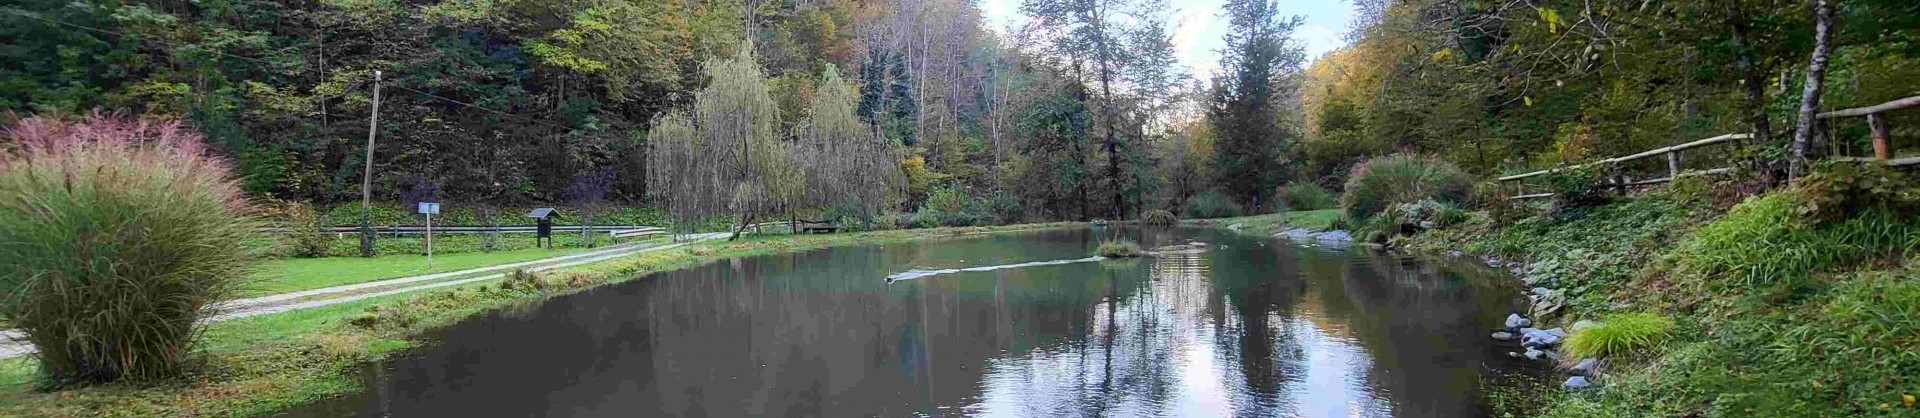 Mlinsko jezero gostilna pustov mlin jezera slovenije slovenska jezera moja jezera manca korelc 4 sl